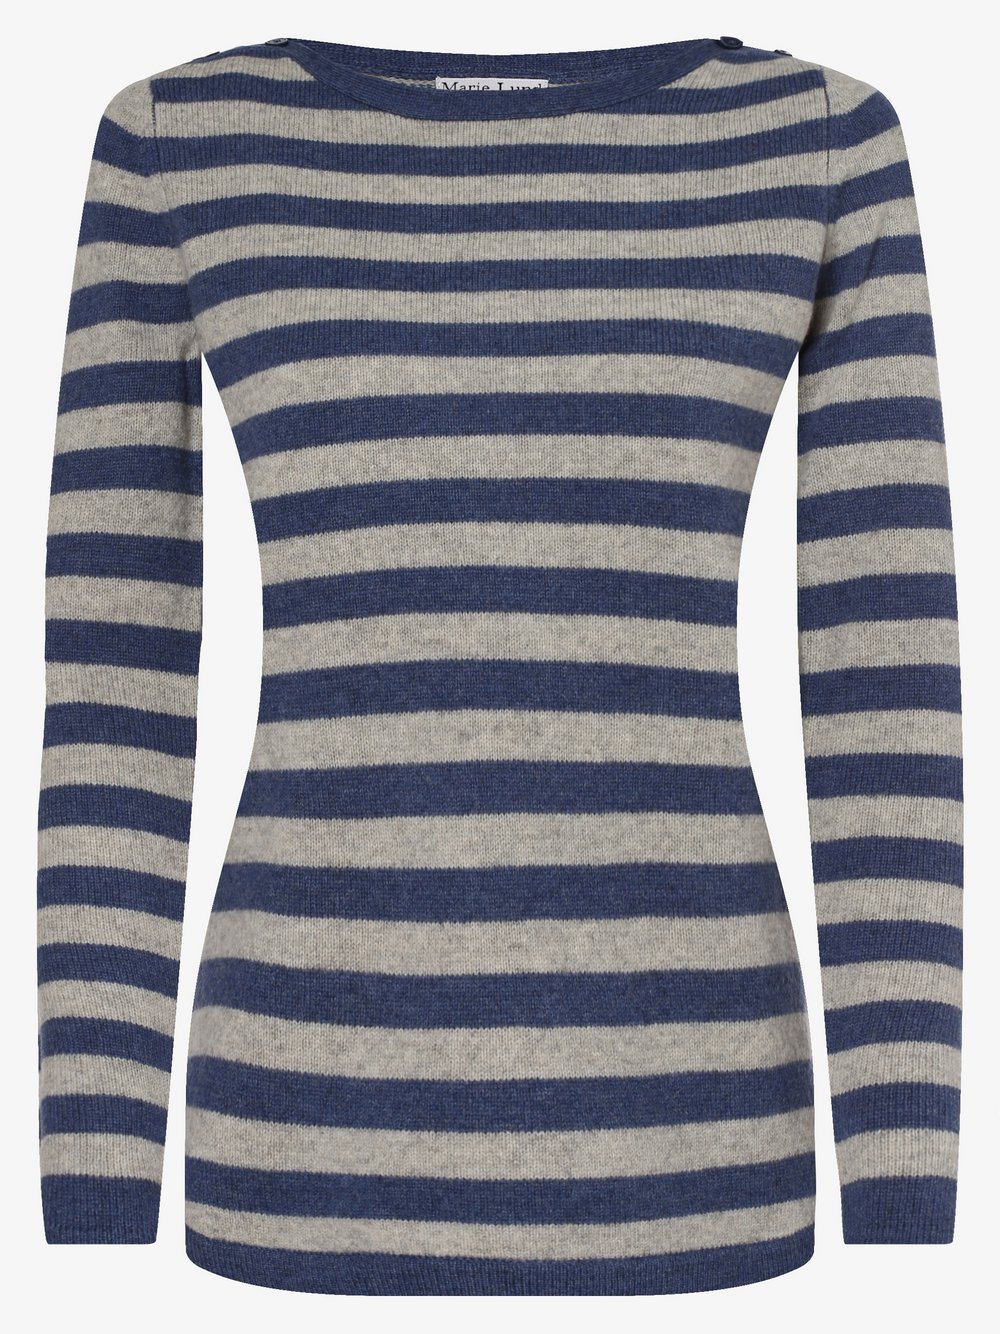 Marie Lund - Damski sweter z wełny merino, niebieski|szary